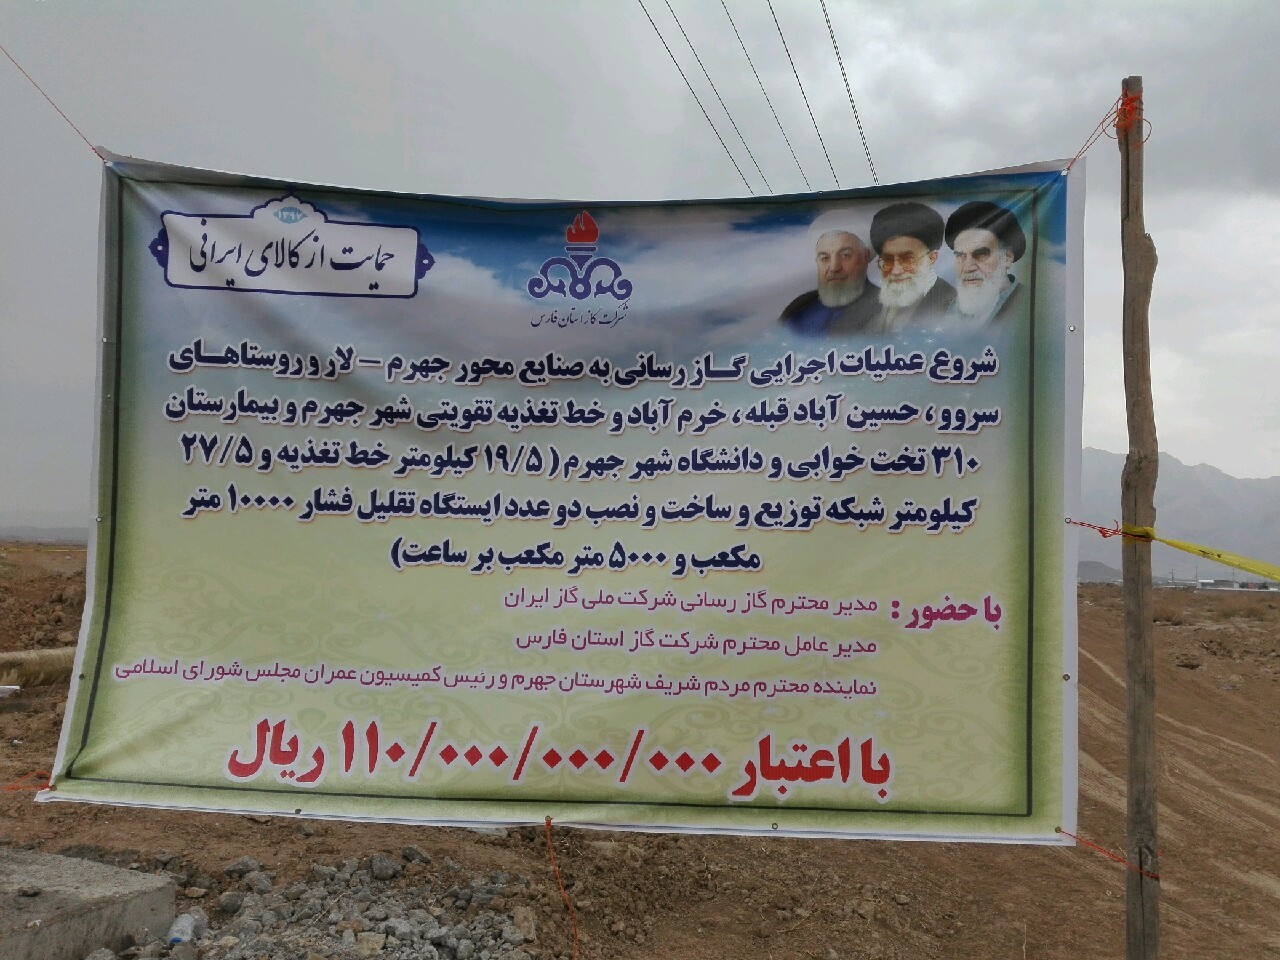 گاز رسانی به ۲۷ روستای جهرم تا دهه فجر